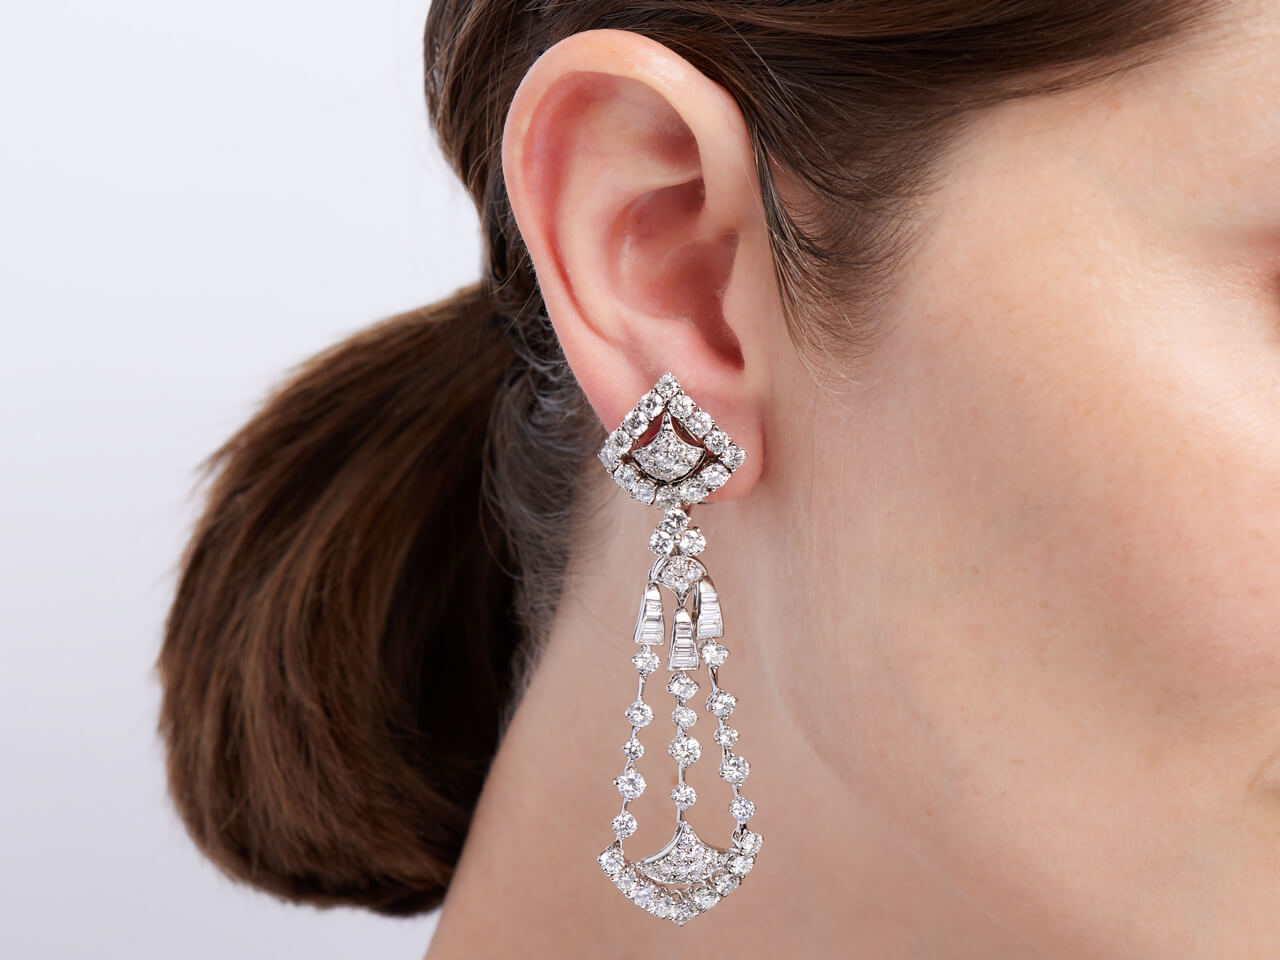 Diamond Chandelier Earrings in 18K